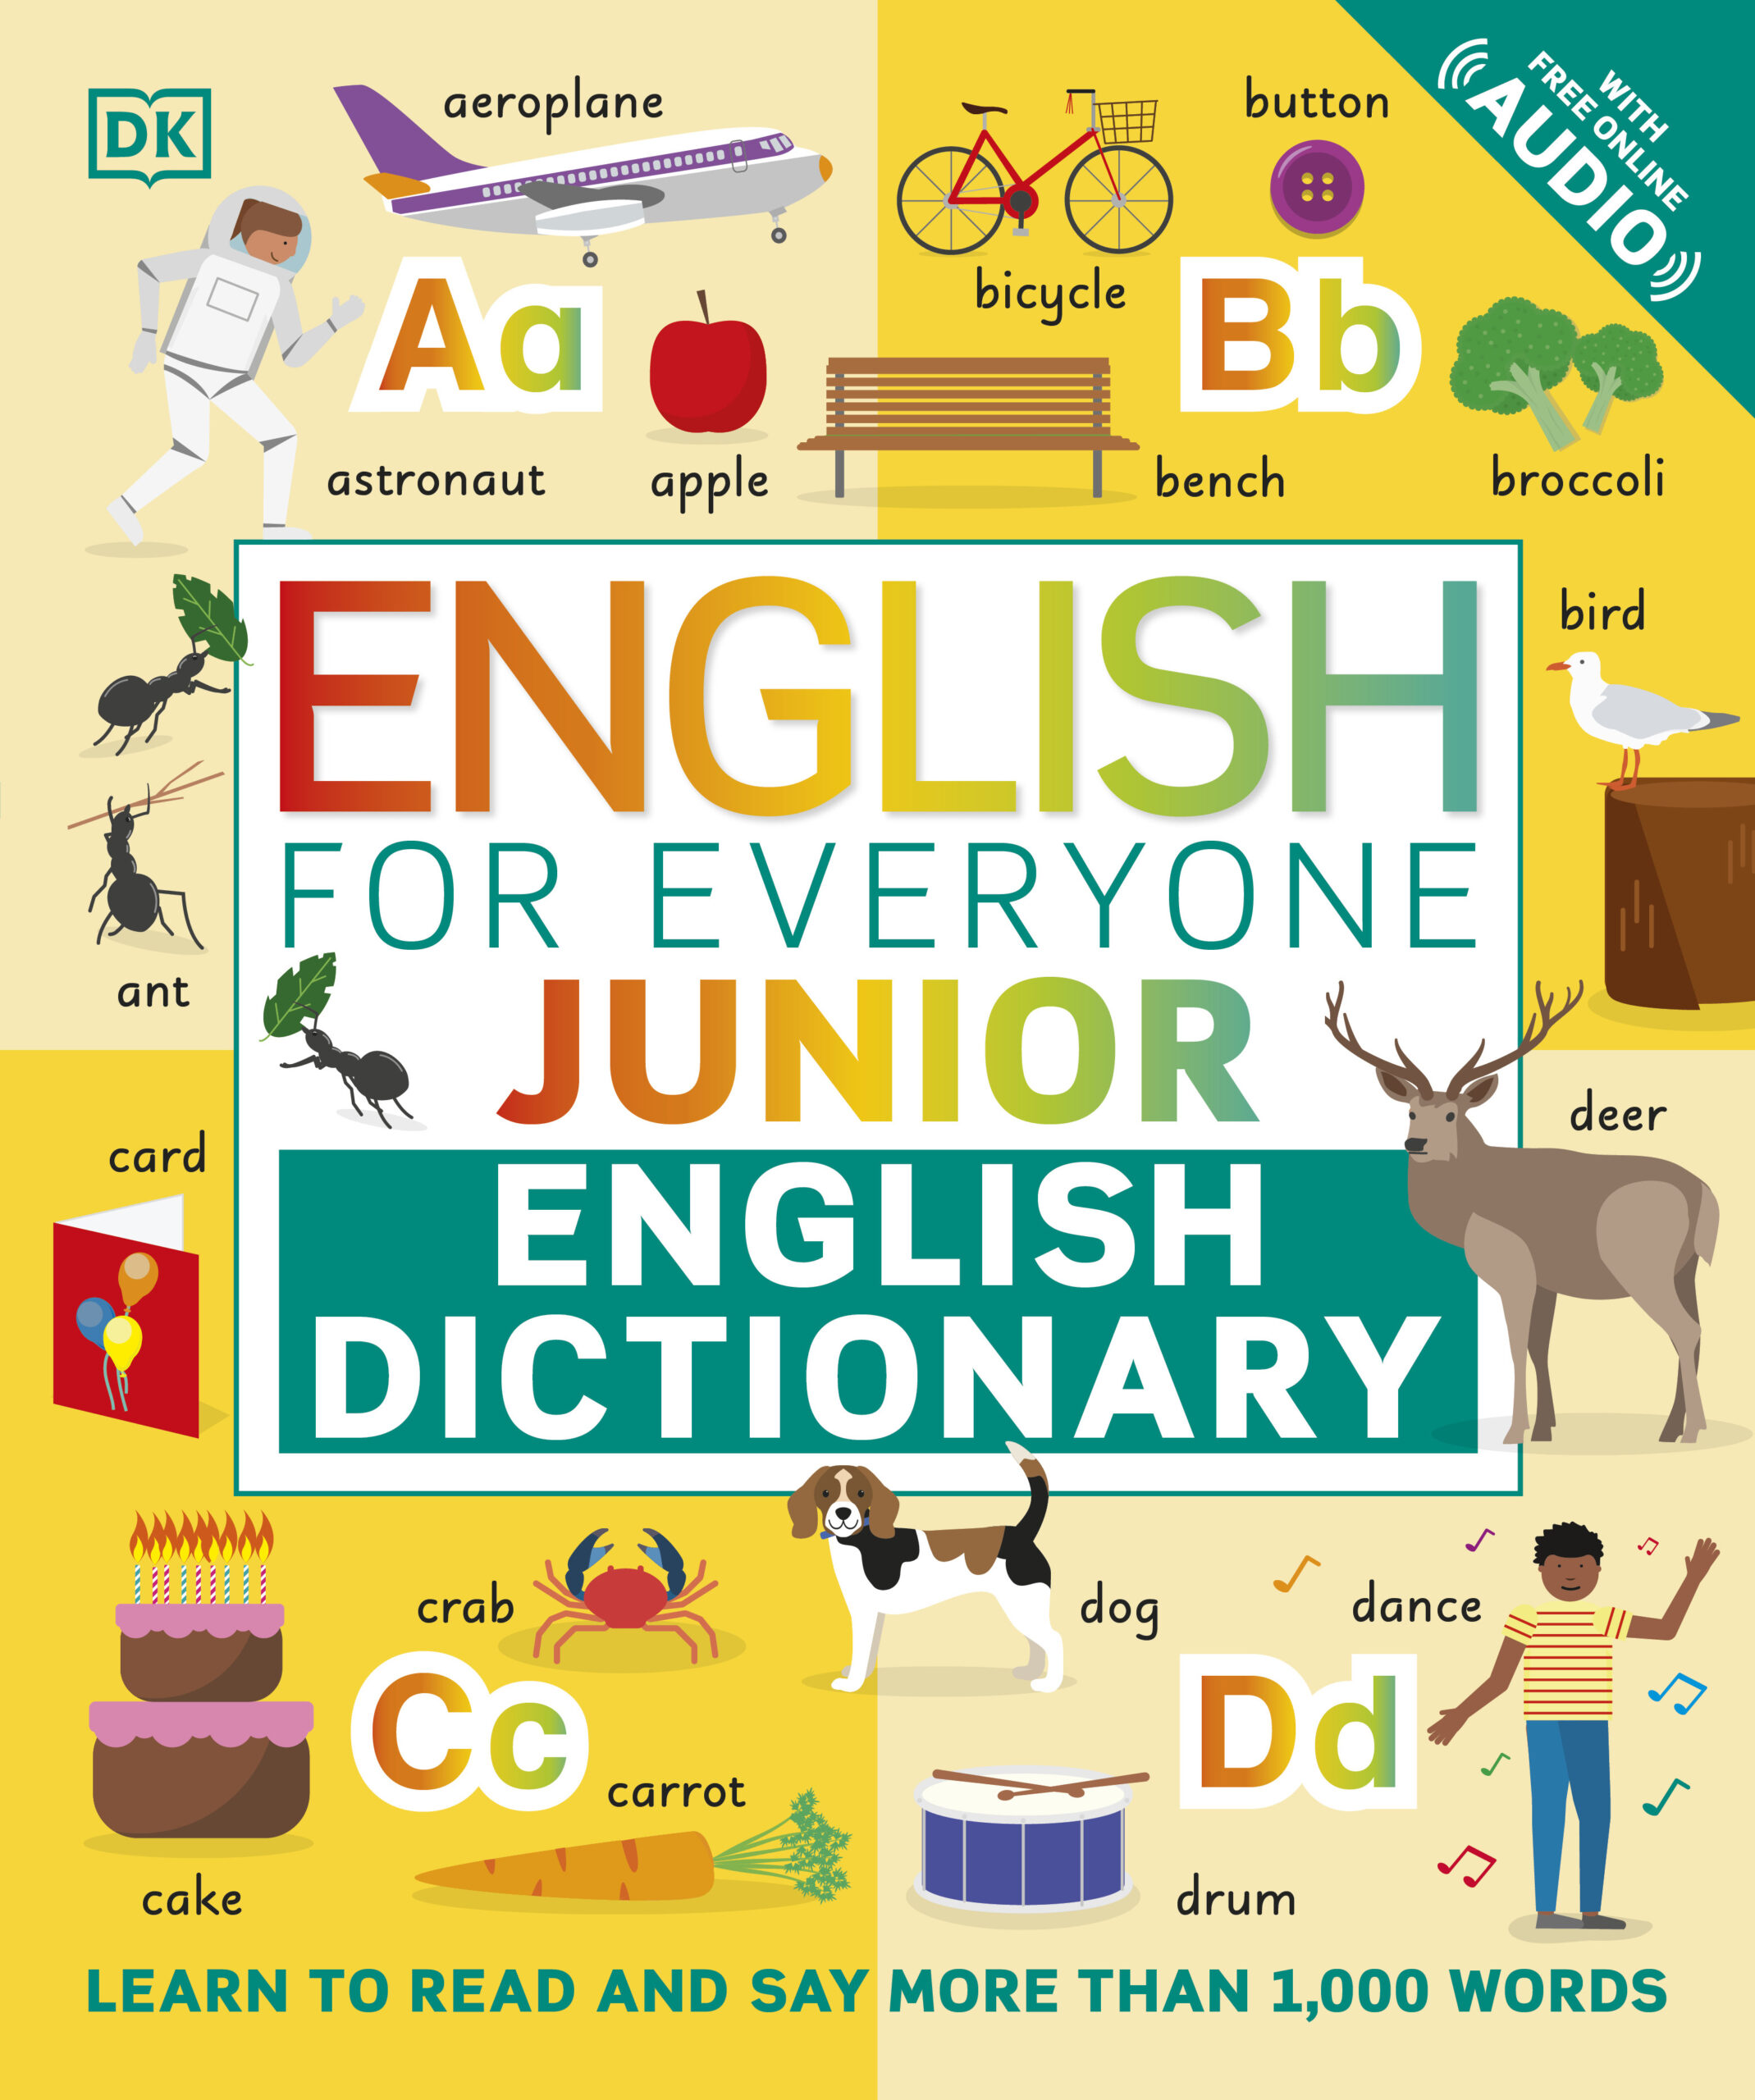 English for Everyone Junior English Dictionary, sách - English for Everyone Junior English Dictionary là một cuốn sách thông minh để học tiếng Anh cho trẻ em. Với hình ảnh đẹp mắt và đầy màu sắc, sách cung cấp cho các em nhiều từ vựng liên quan đến cuộc sống hàng ngày. Sách cũng bao gồm các phần bổ sung như luyện tập về ngữ pháp, cách phát âm và các chủ đề phổ biến. Với English for Everyone Junior English Dictionary, trẻ em sẽ phát triển vốn tiếng Anh của mình một cách dễ dàng và thú vị.